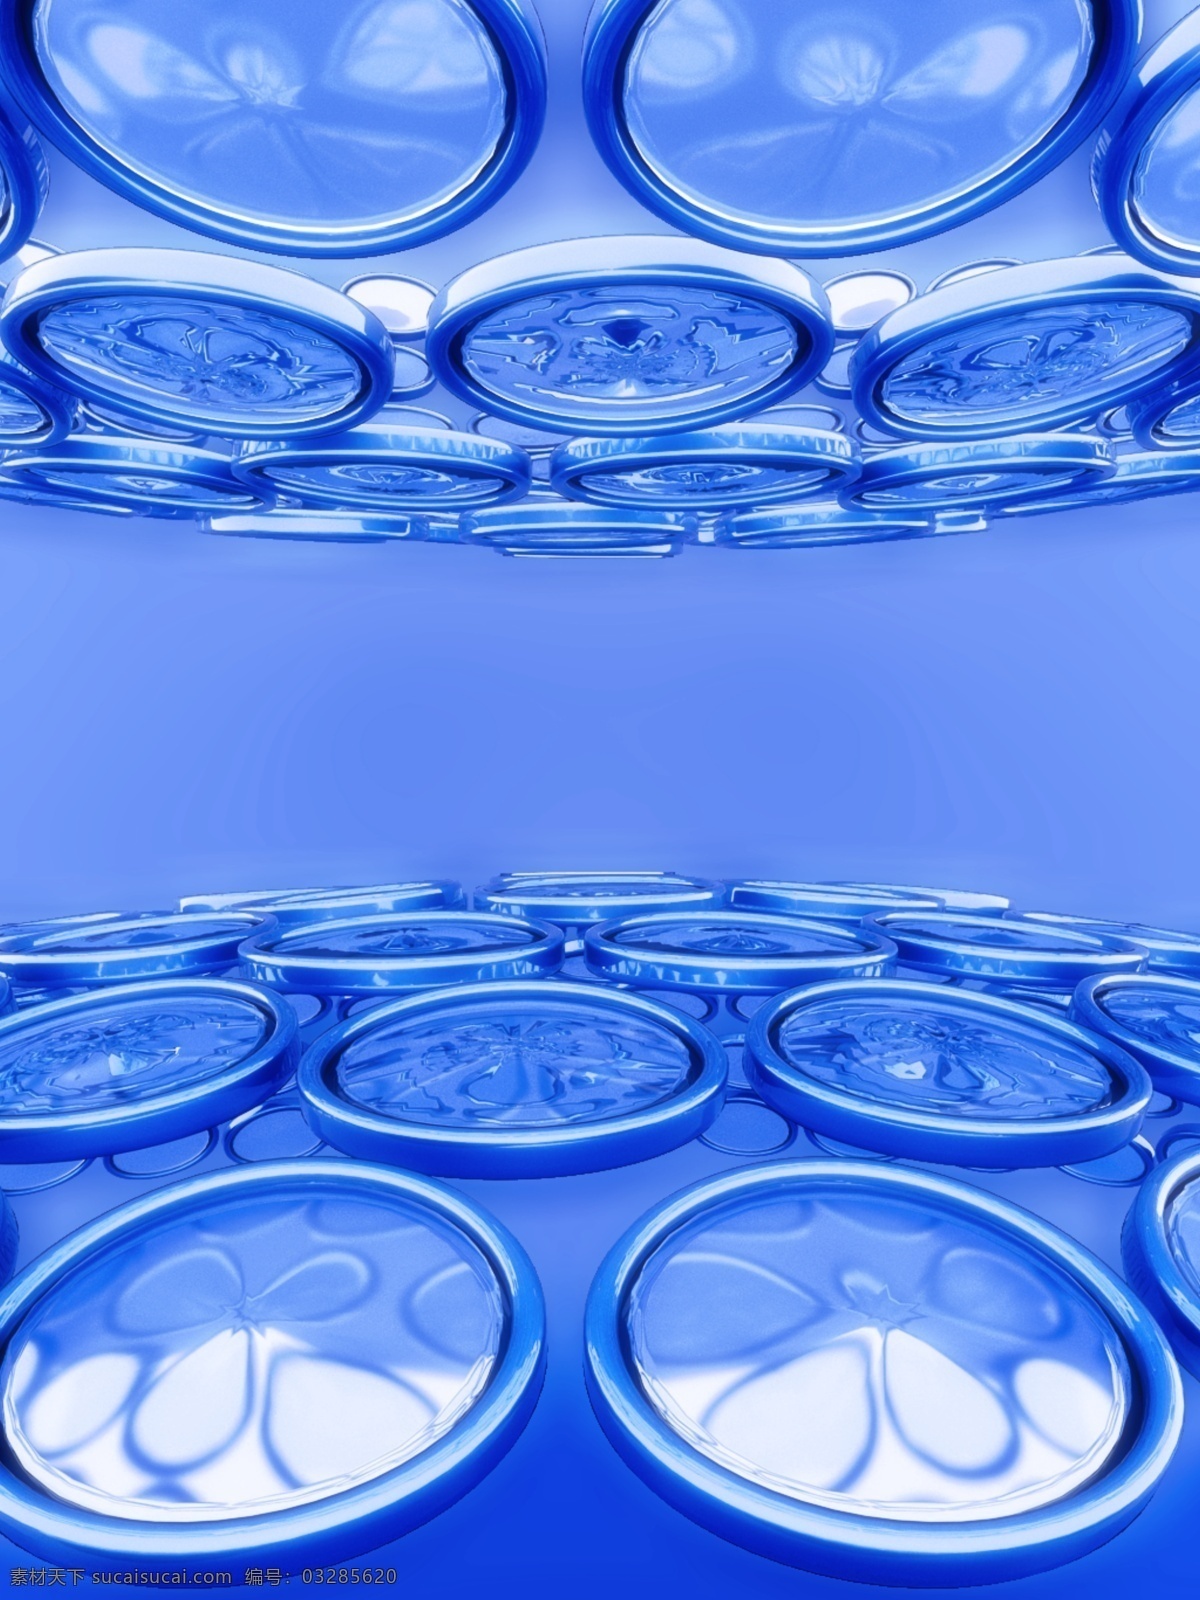 全 原创 蓝色 金属 玻璃 质感 创意 空间 透视 感 背景 3d 科技感 c4d 透视感 电商 玻璃镜 镜子